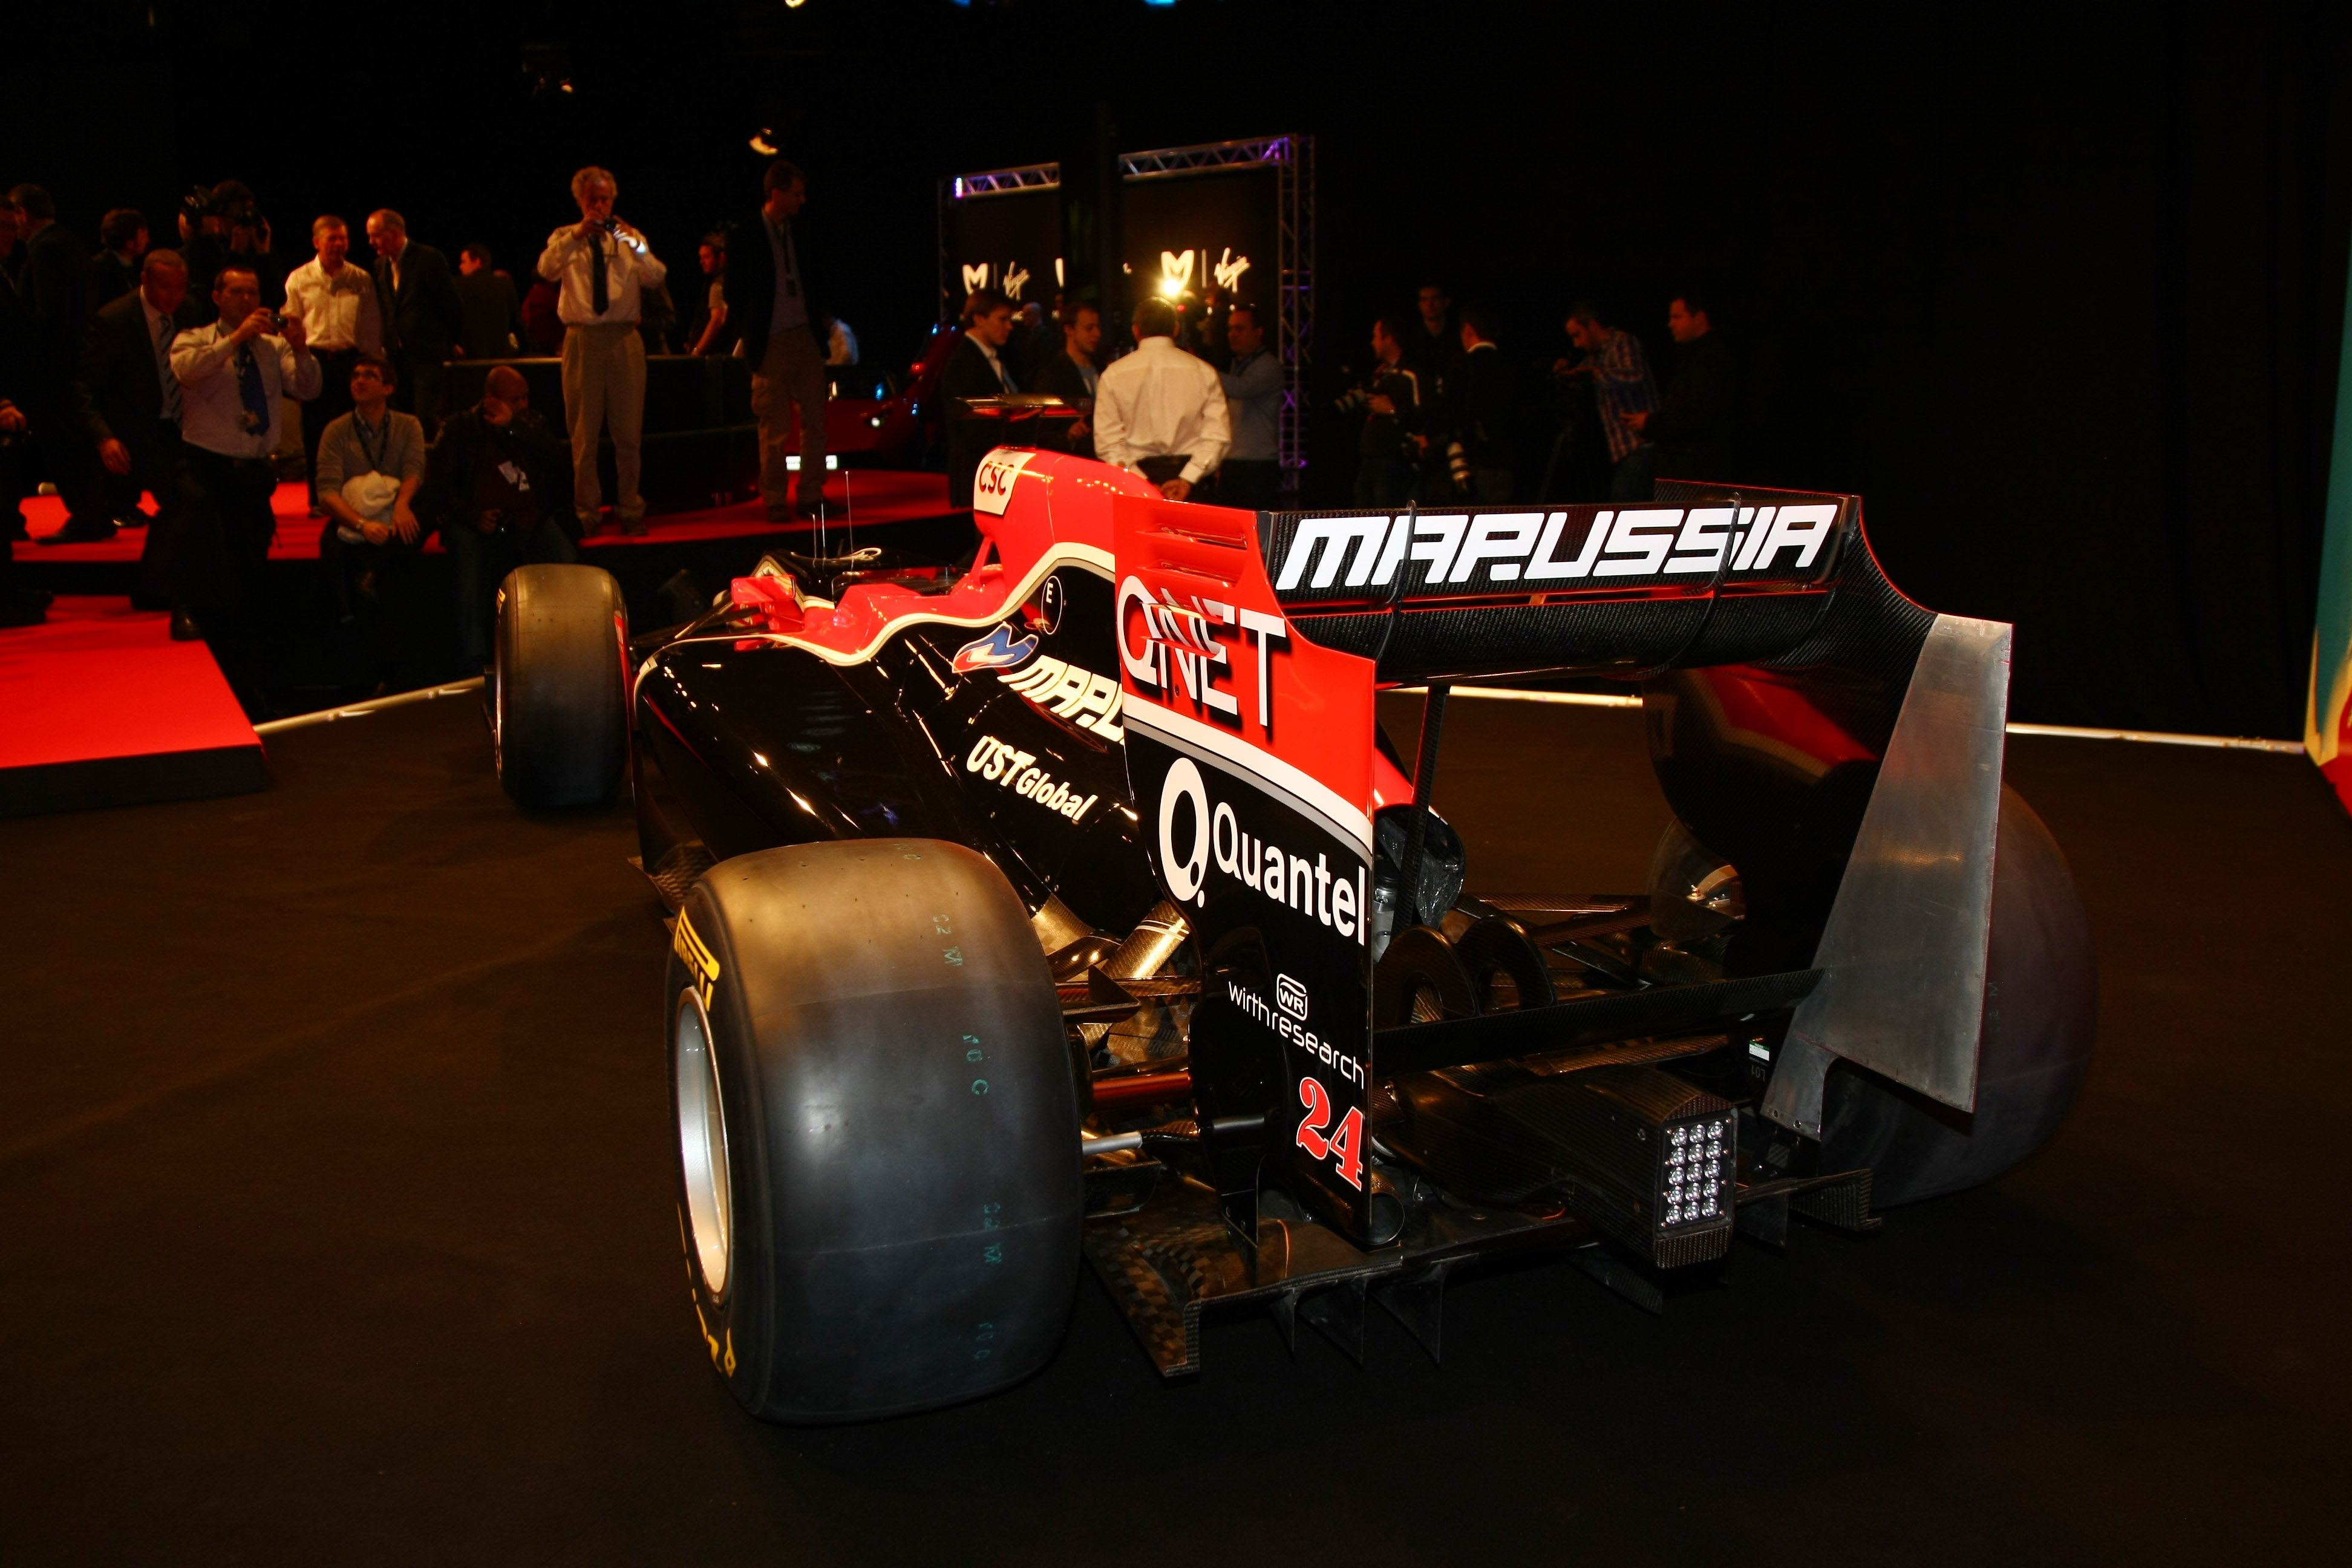 ‘Virgin wil naam veranderen in Marussia Racing’